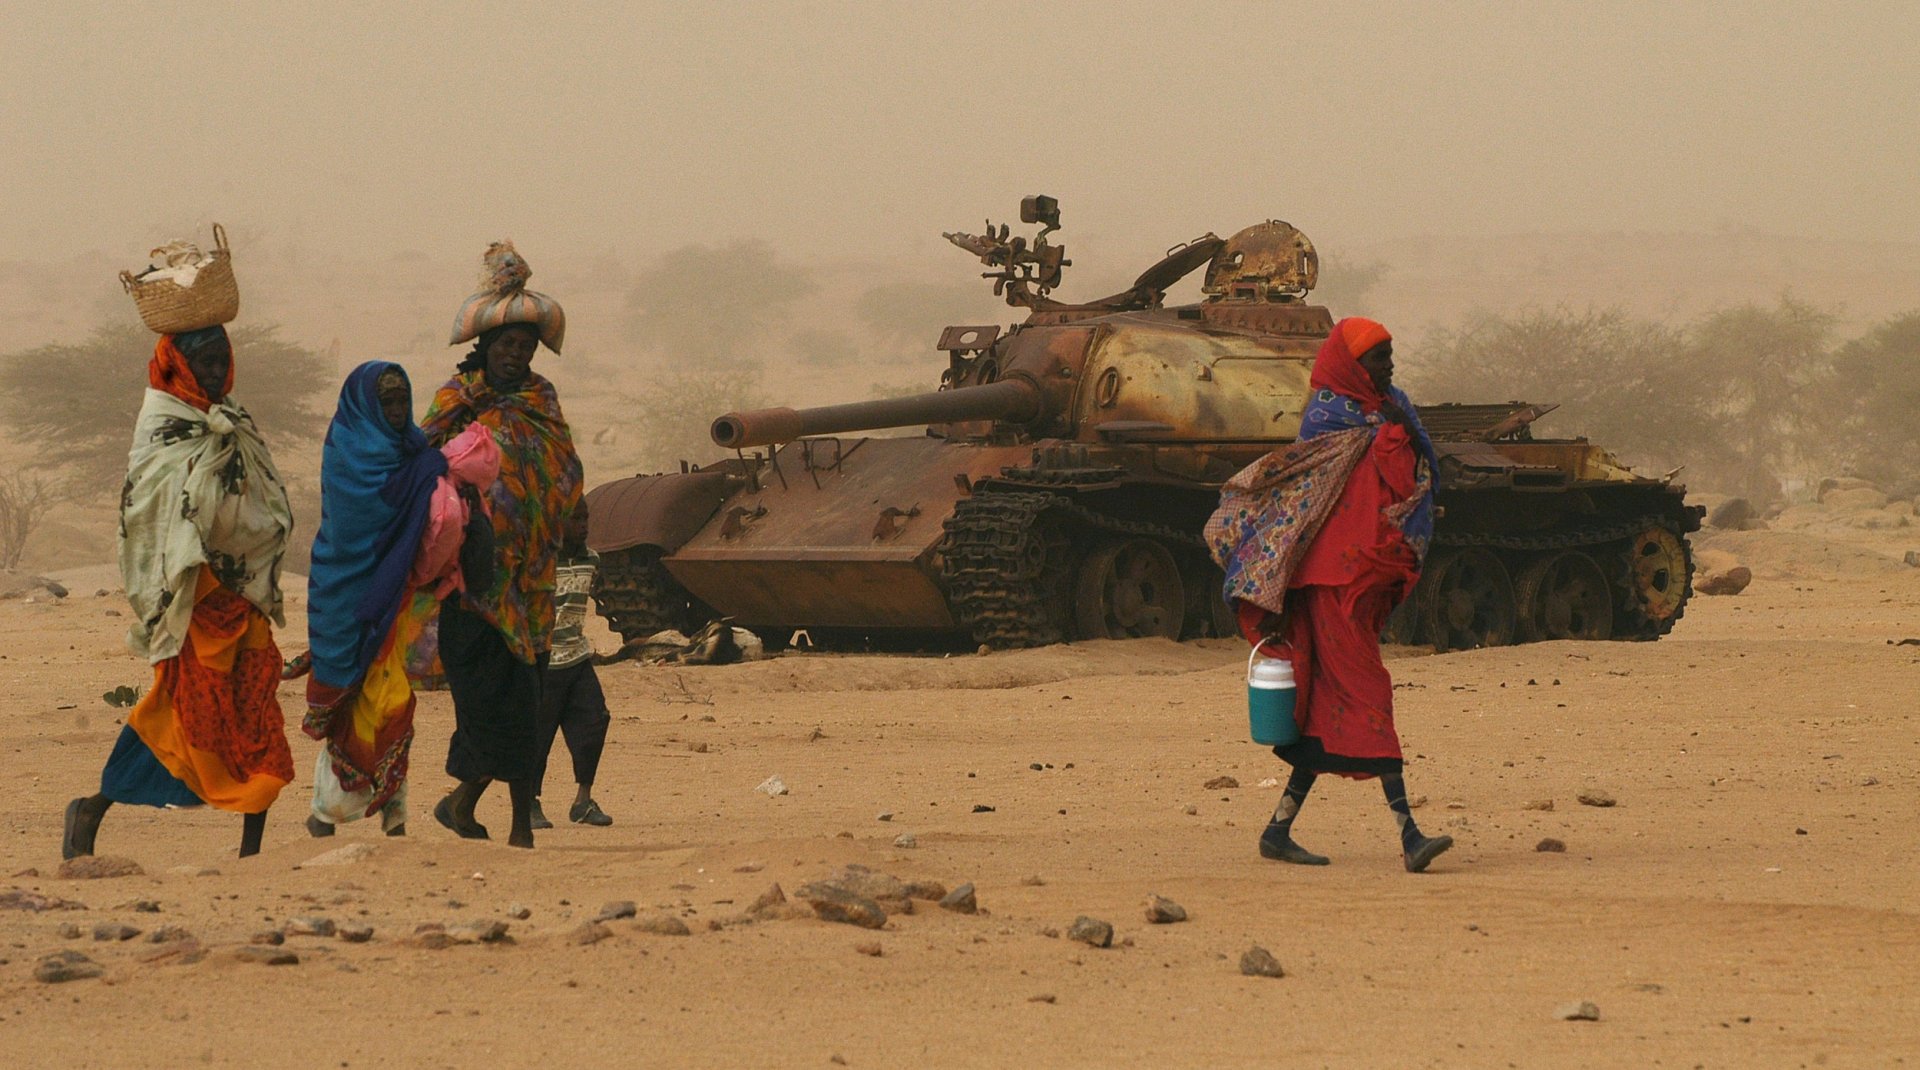 Soudan : la guerre a fait "près de 8 millions" de déplacés, selon l'ONU